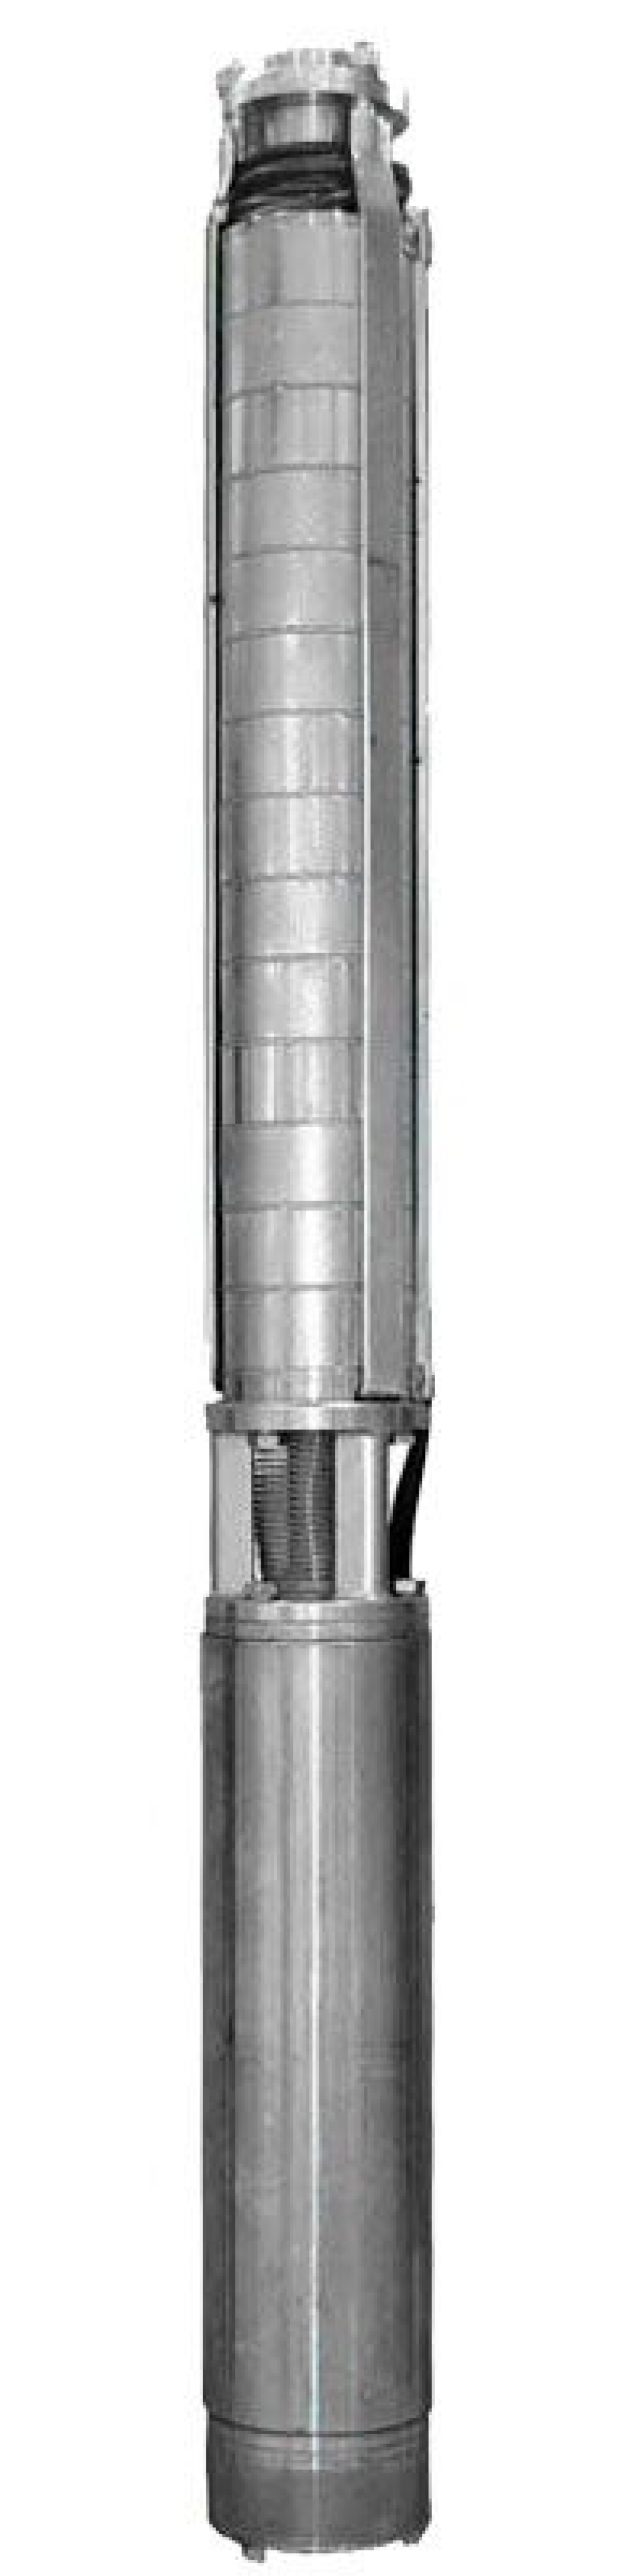 Насос скважинный Ливнынасос ЭЦВ 4-6.5-130 центробежный, производительность 6.5 м3/час, напор 130 м, мощность 5 кВт, напряжение трехфазной сети 380В